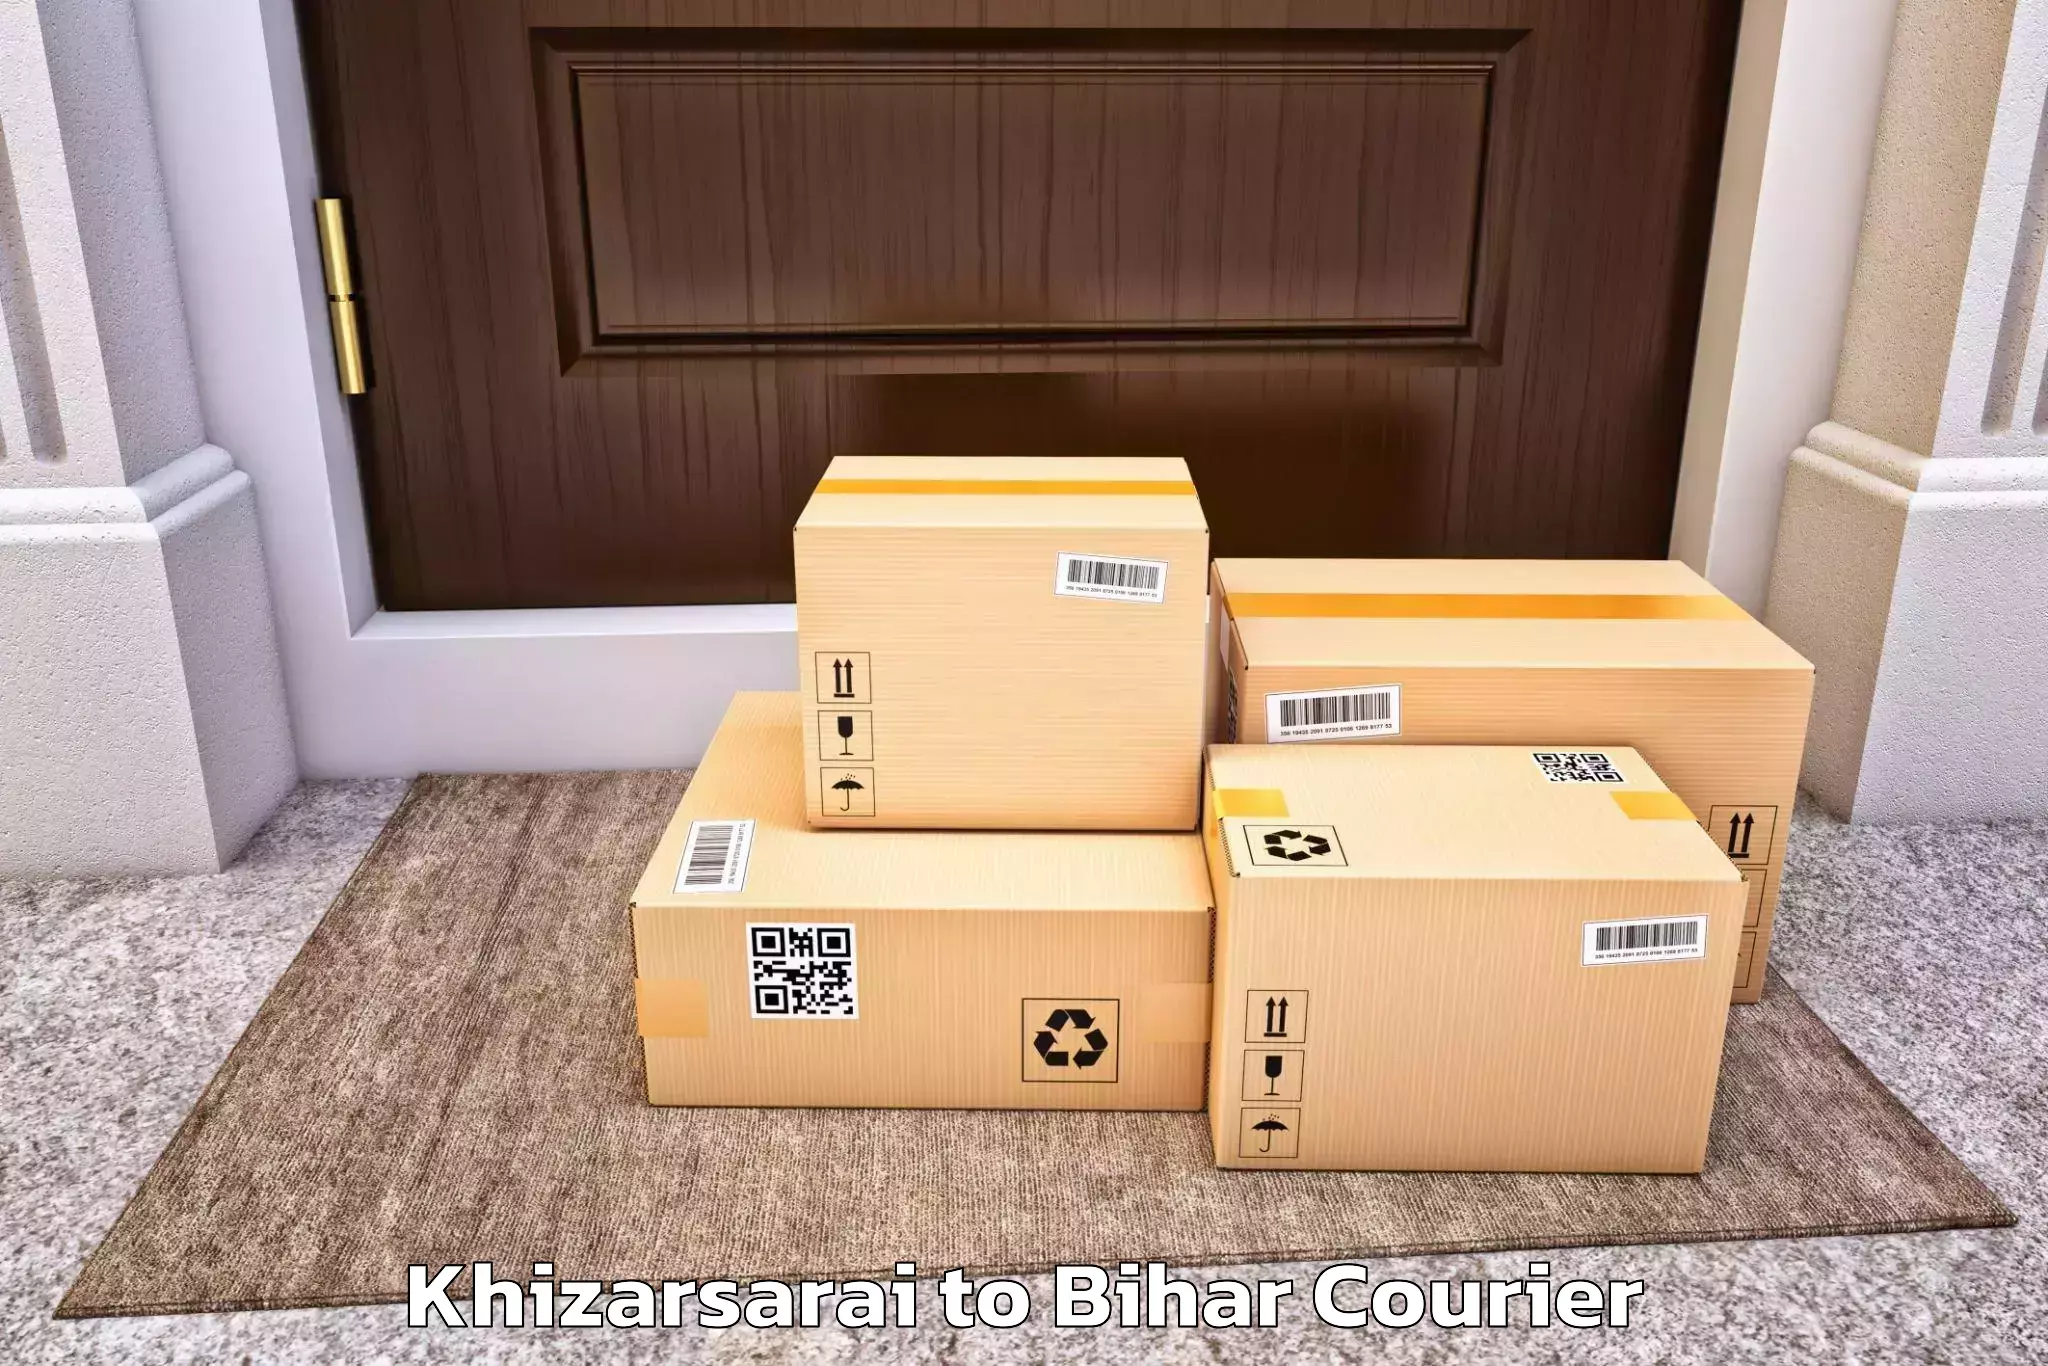 Personalized moving plans Khizarsarai to Mojharia